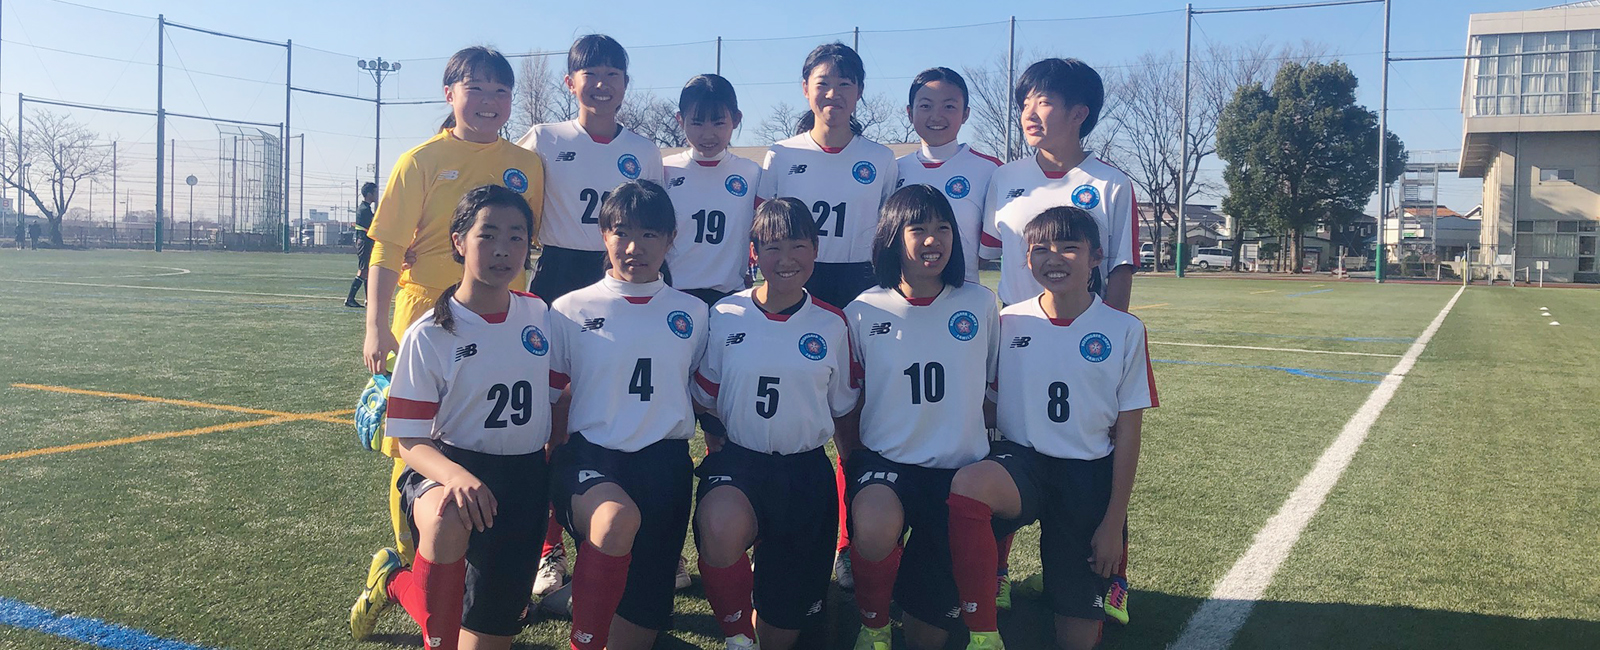 越谷ladys Family レディースファミリー 公式サイト 埼玉県越谷市の女子サッカークラブチーム 社会人 高校生 中学生 小学生 幼稚園児まで幅広い年代で活動しております